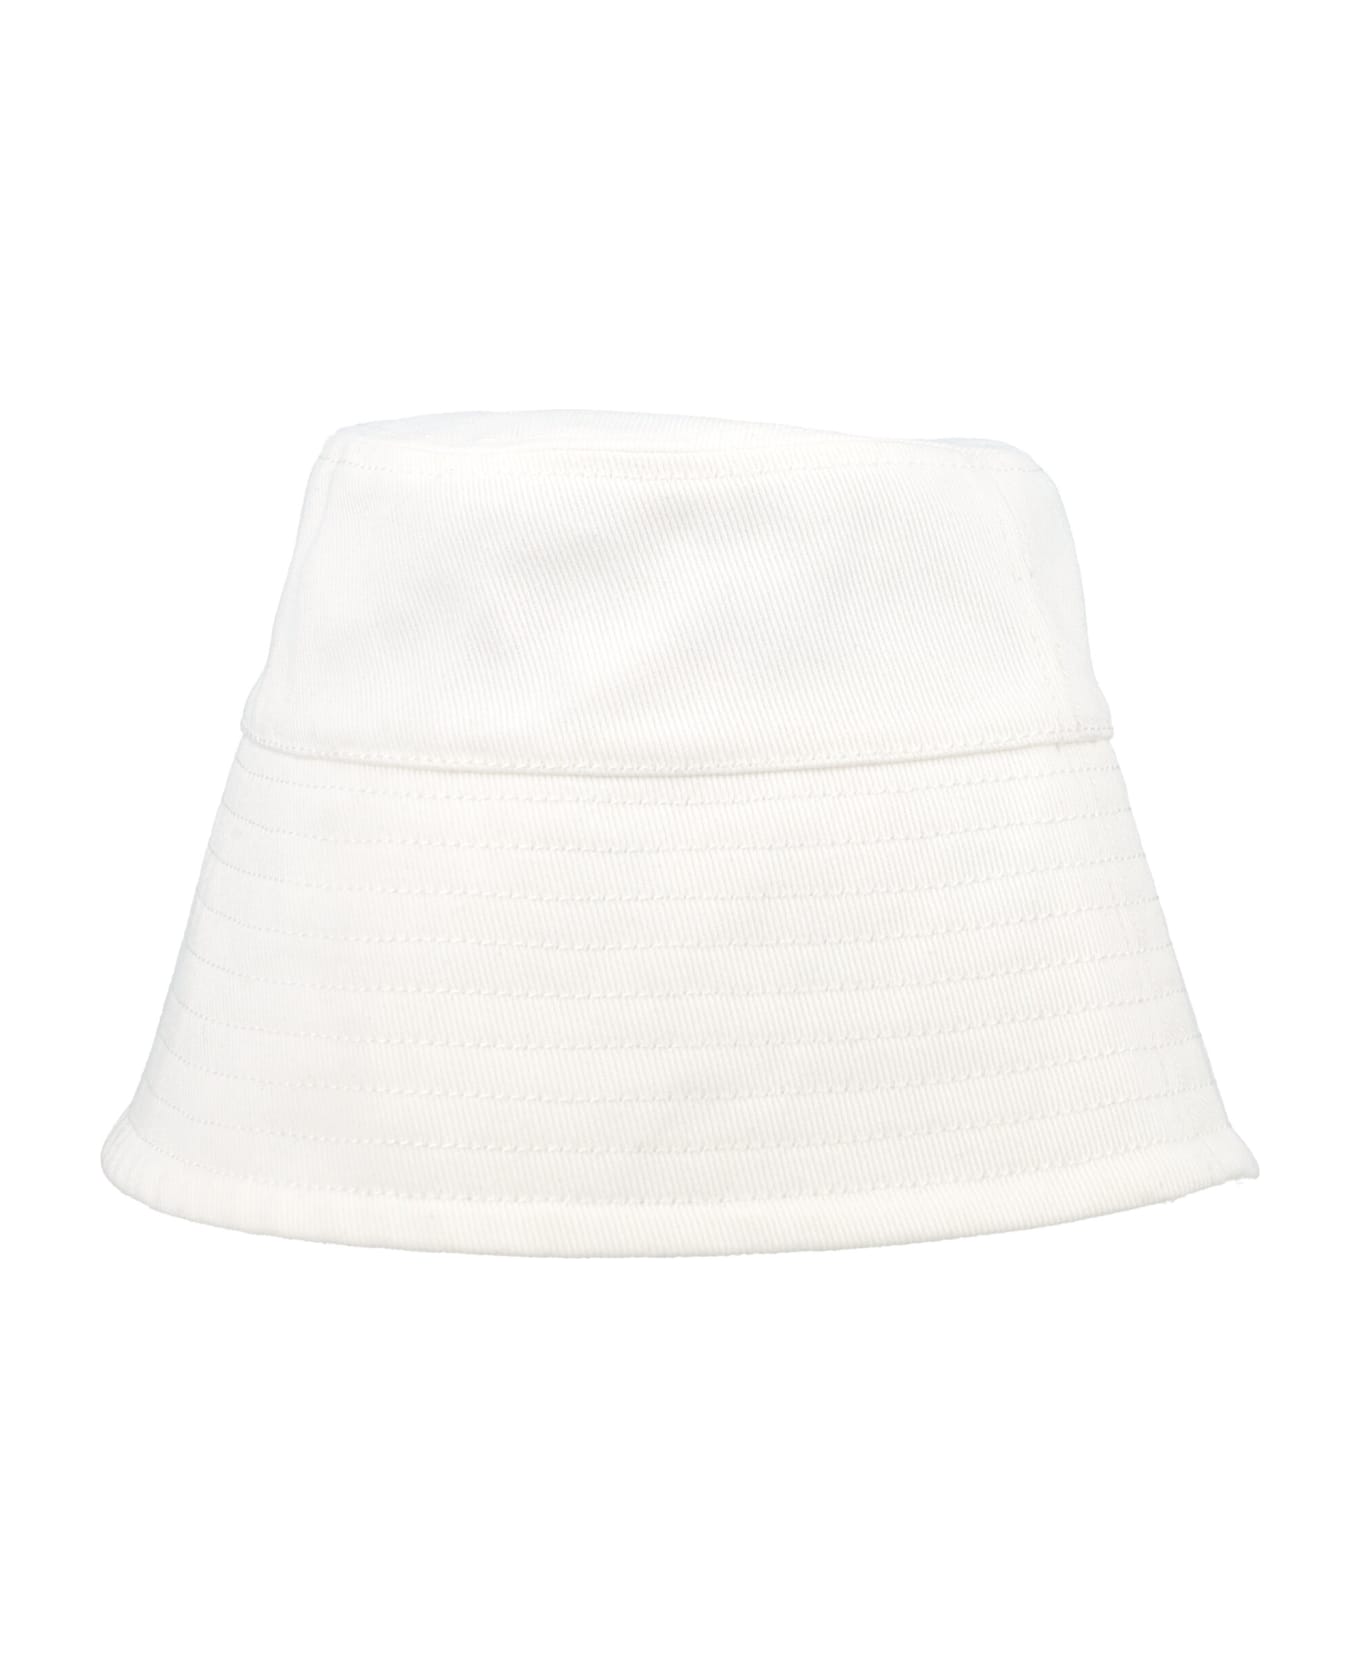 Patou Bucket Hat - WHITE